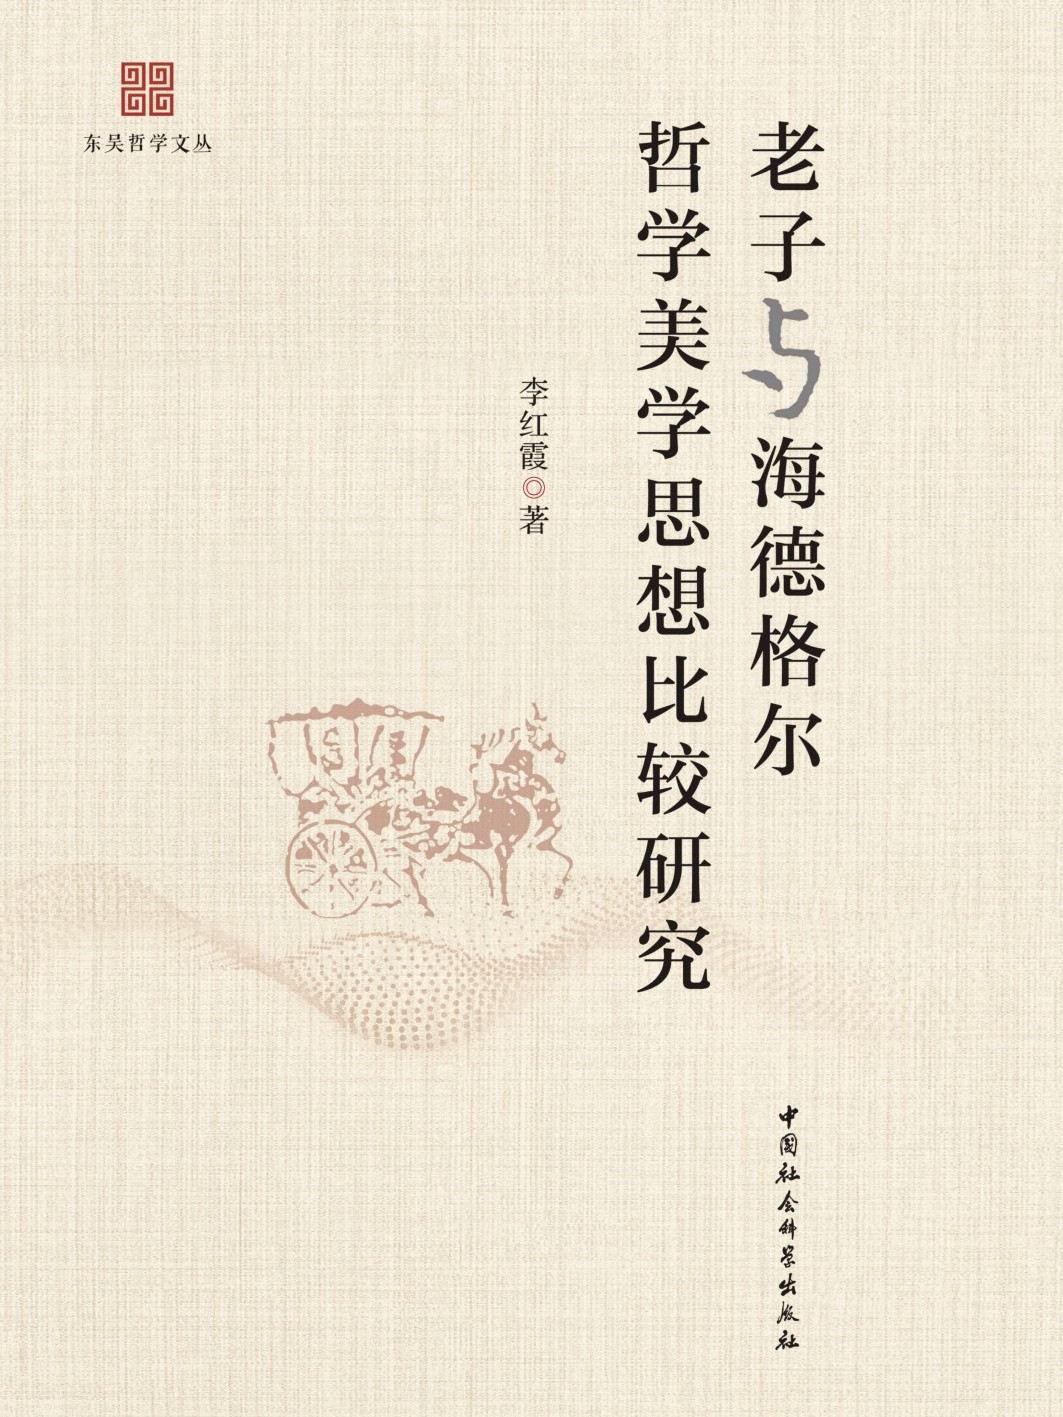 冯友兰：中国哲学的精神和背景，首先即是从定义入手